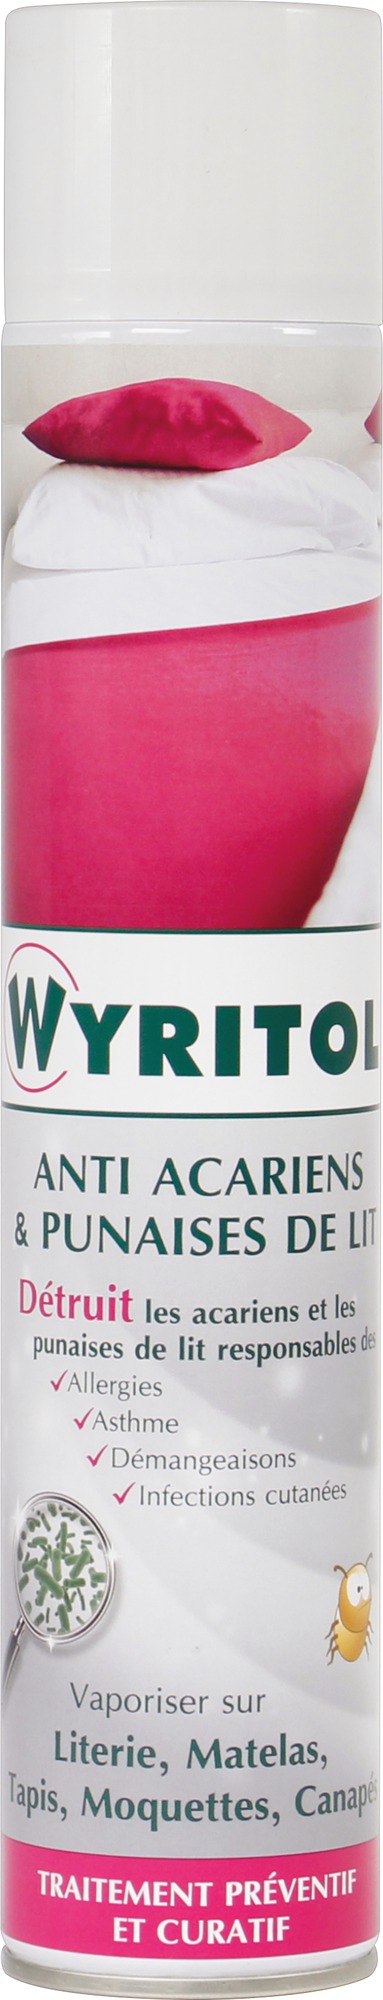 Antiacariens & punaises de lit Wyritol - Aérosol 500 ml